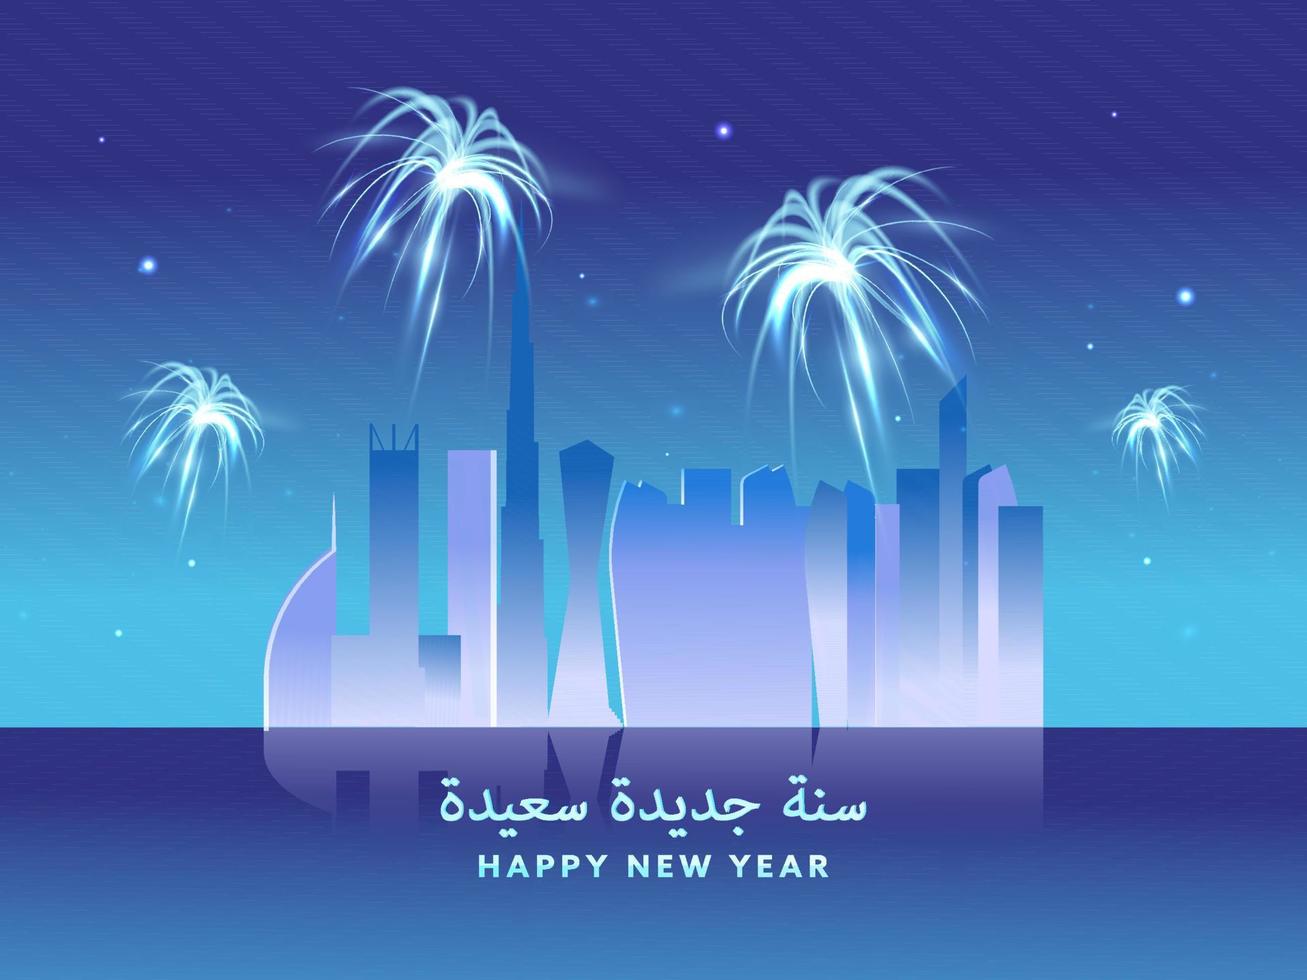 árabe língua feliz Novo ano texto com eua famoso arquitetura e fogos de artifício em azul fundo. vetor